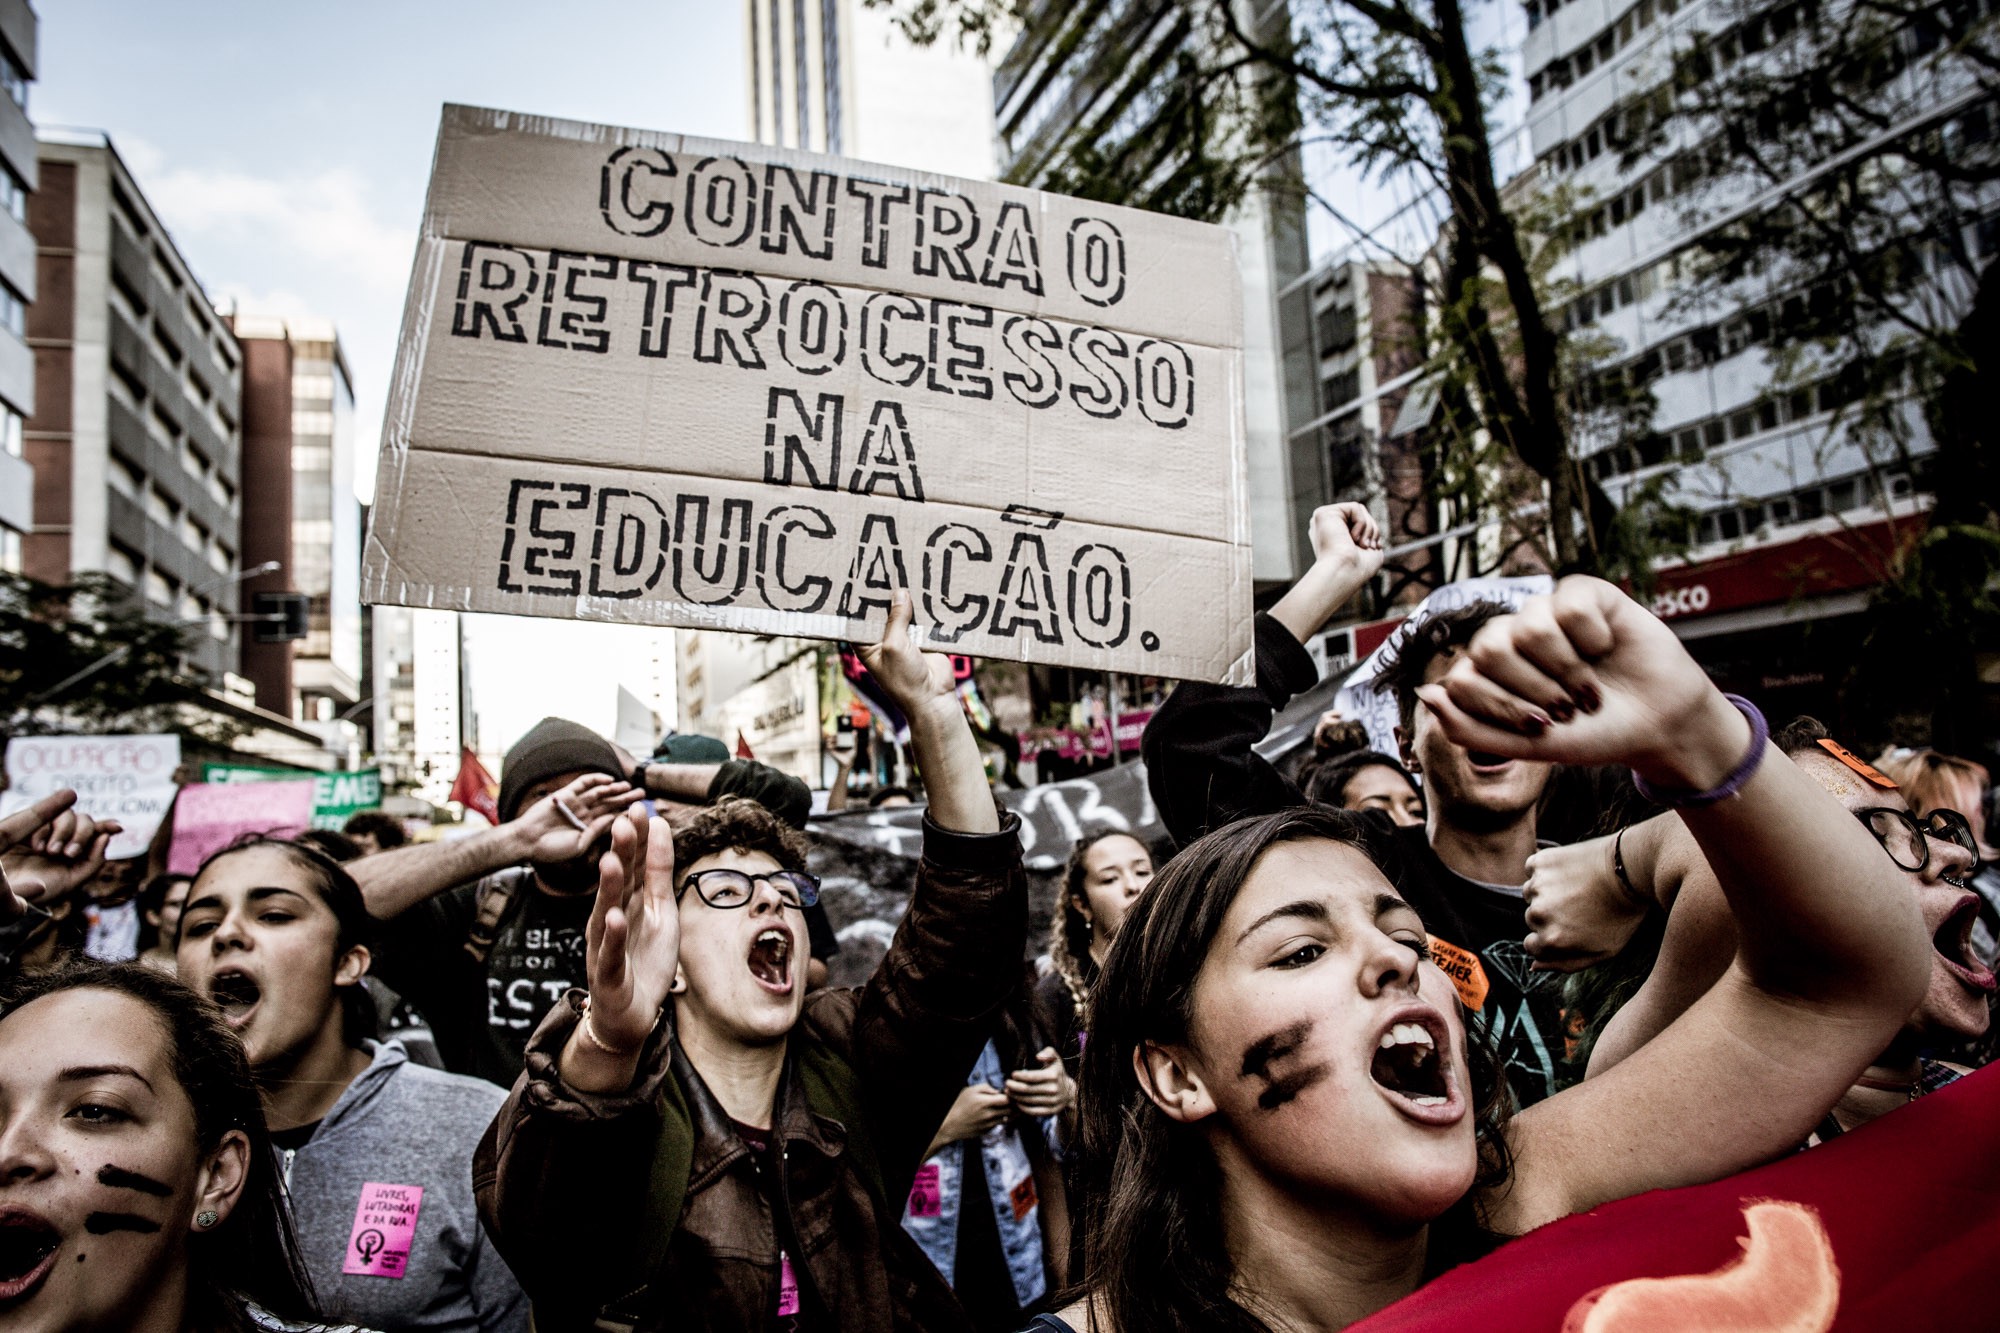 Foto: Leandro Taques/Jornalistas Livres